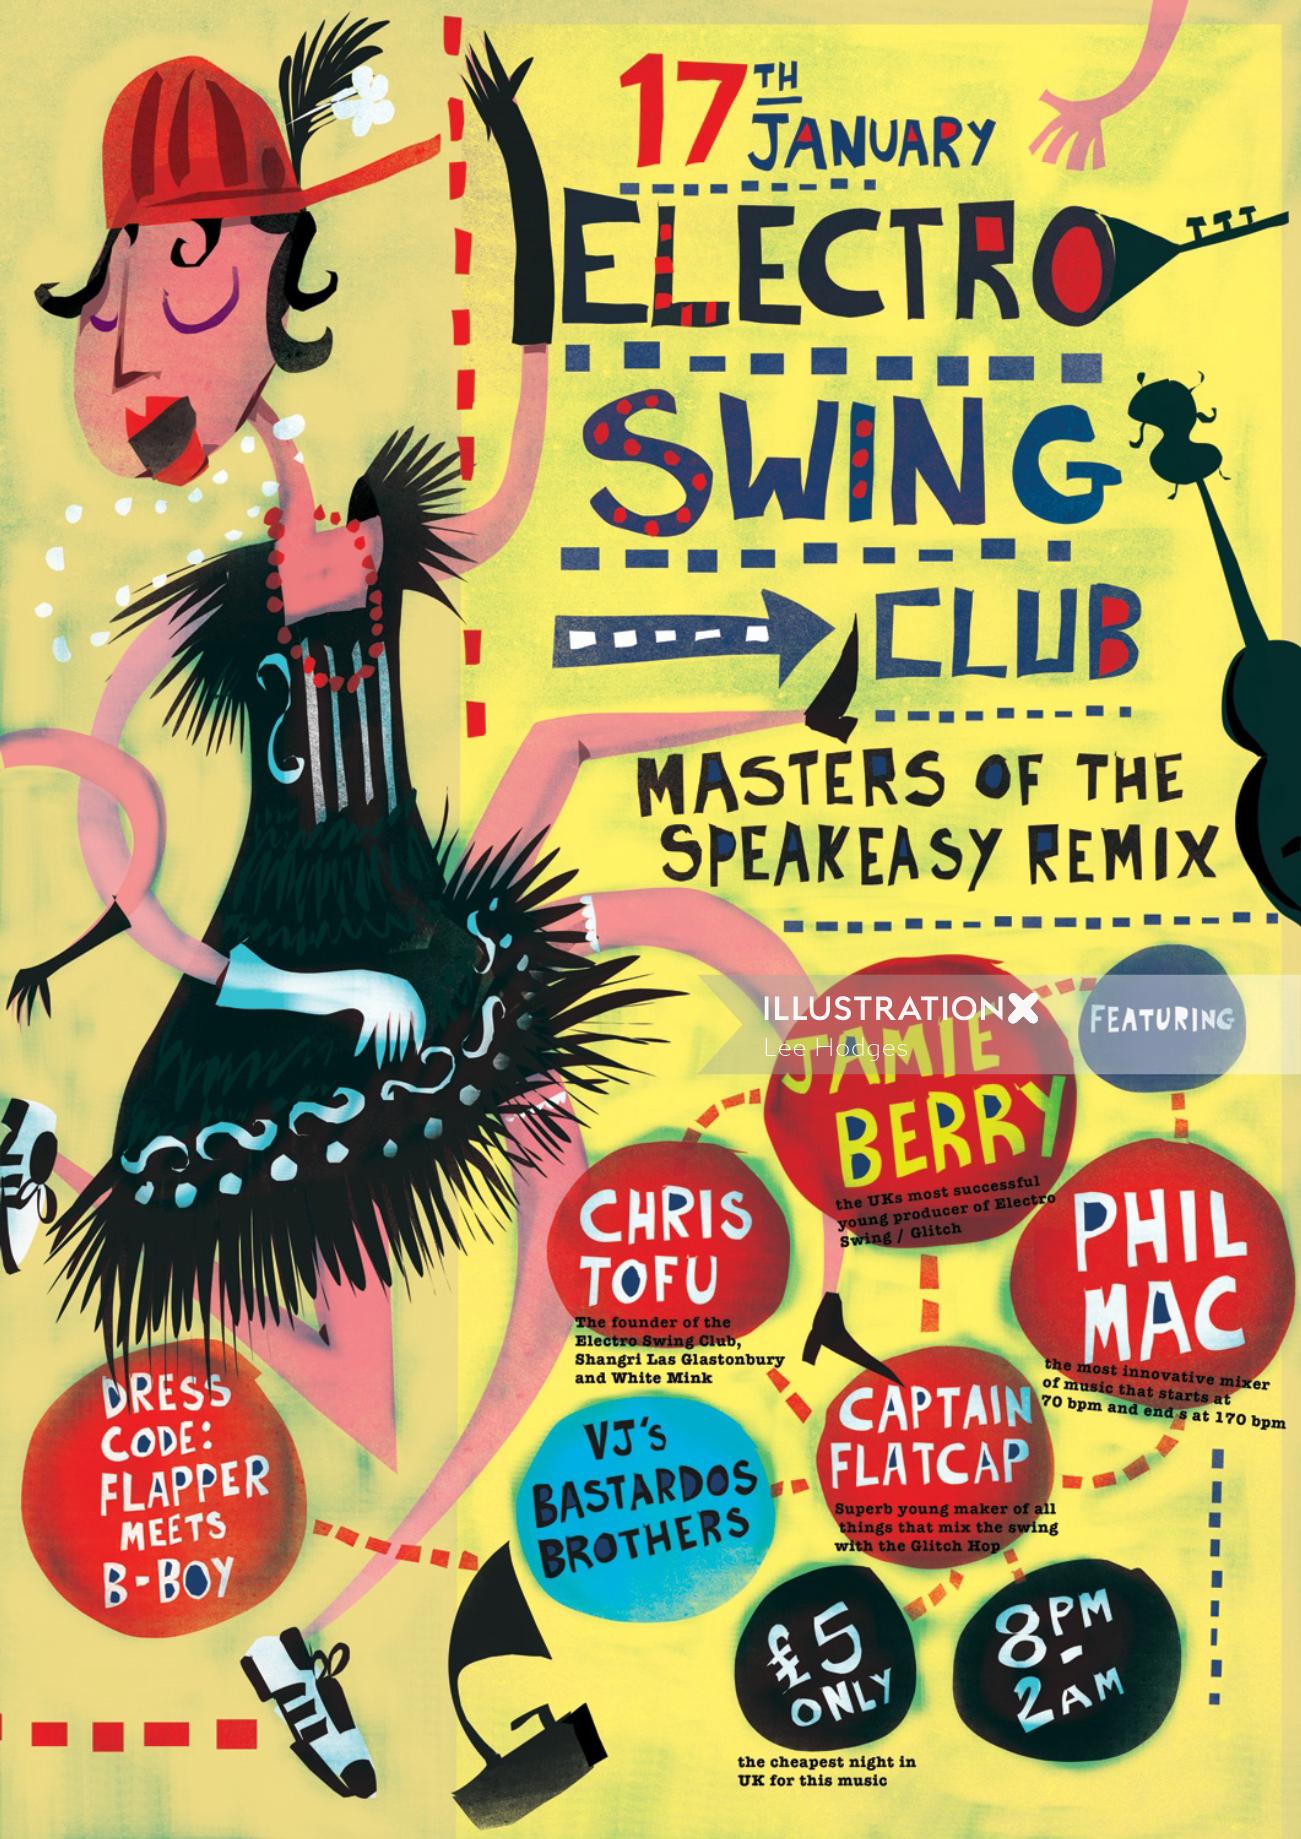 Arte del cartel retro del cartel del club Electro Swing